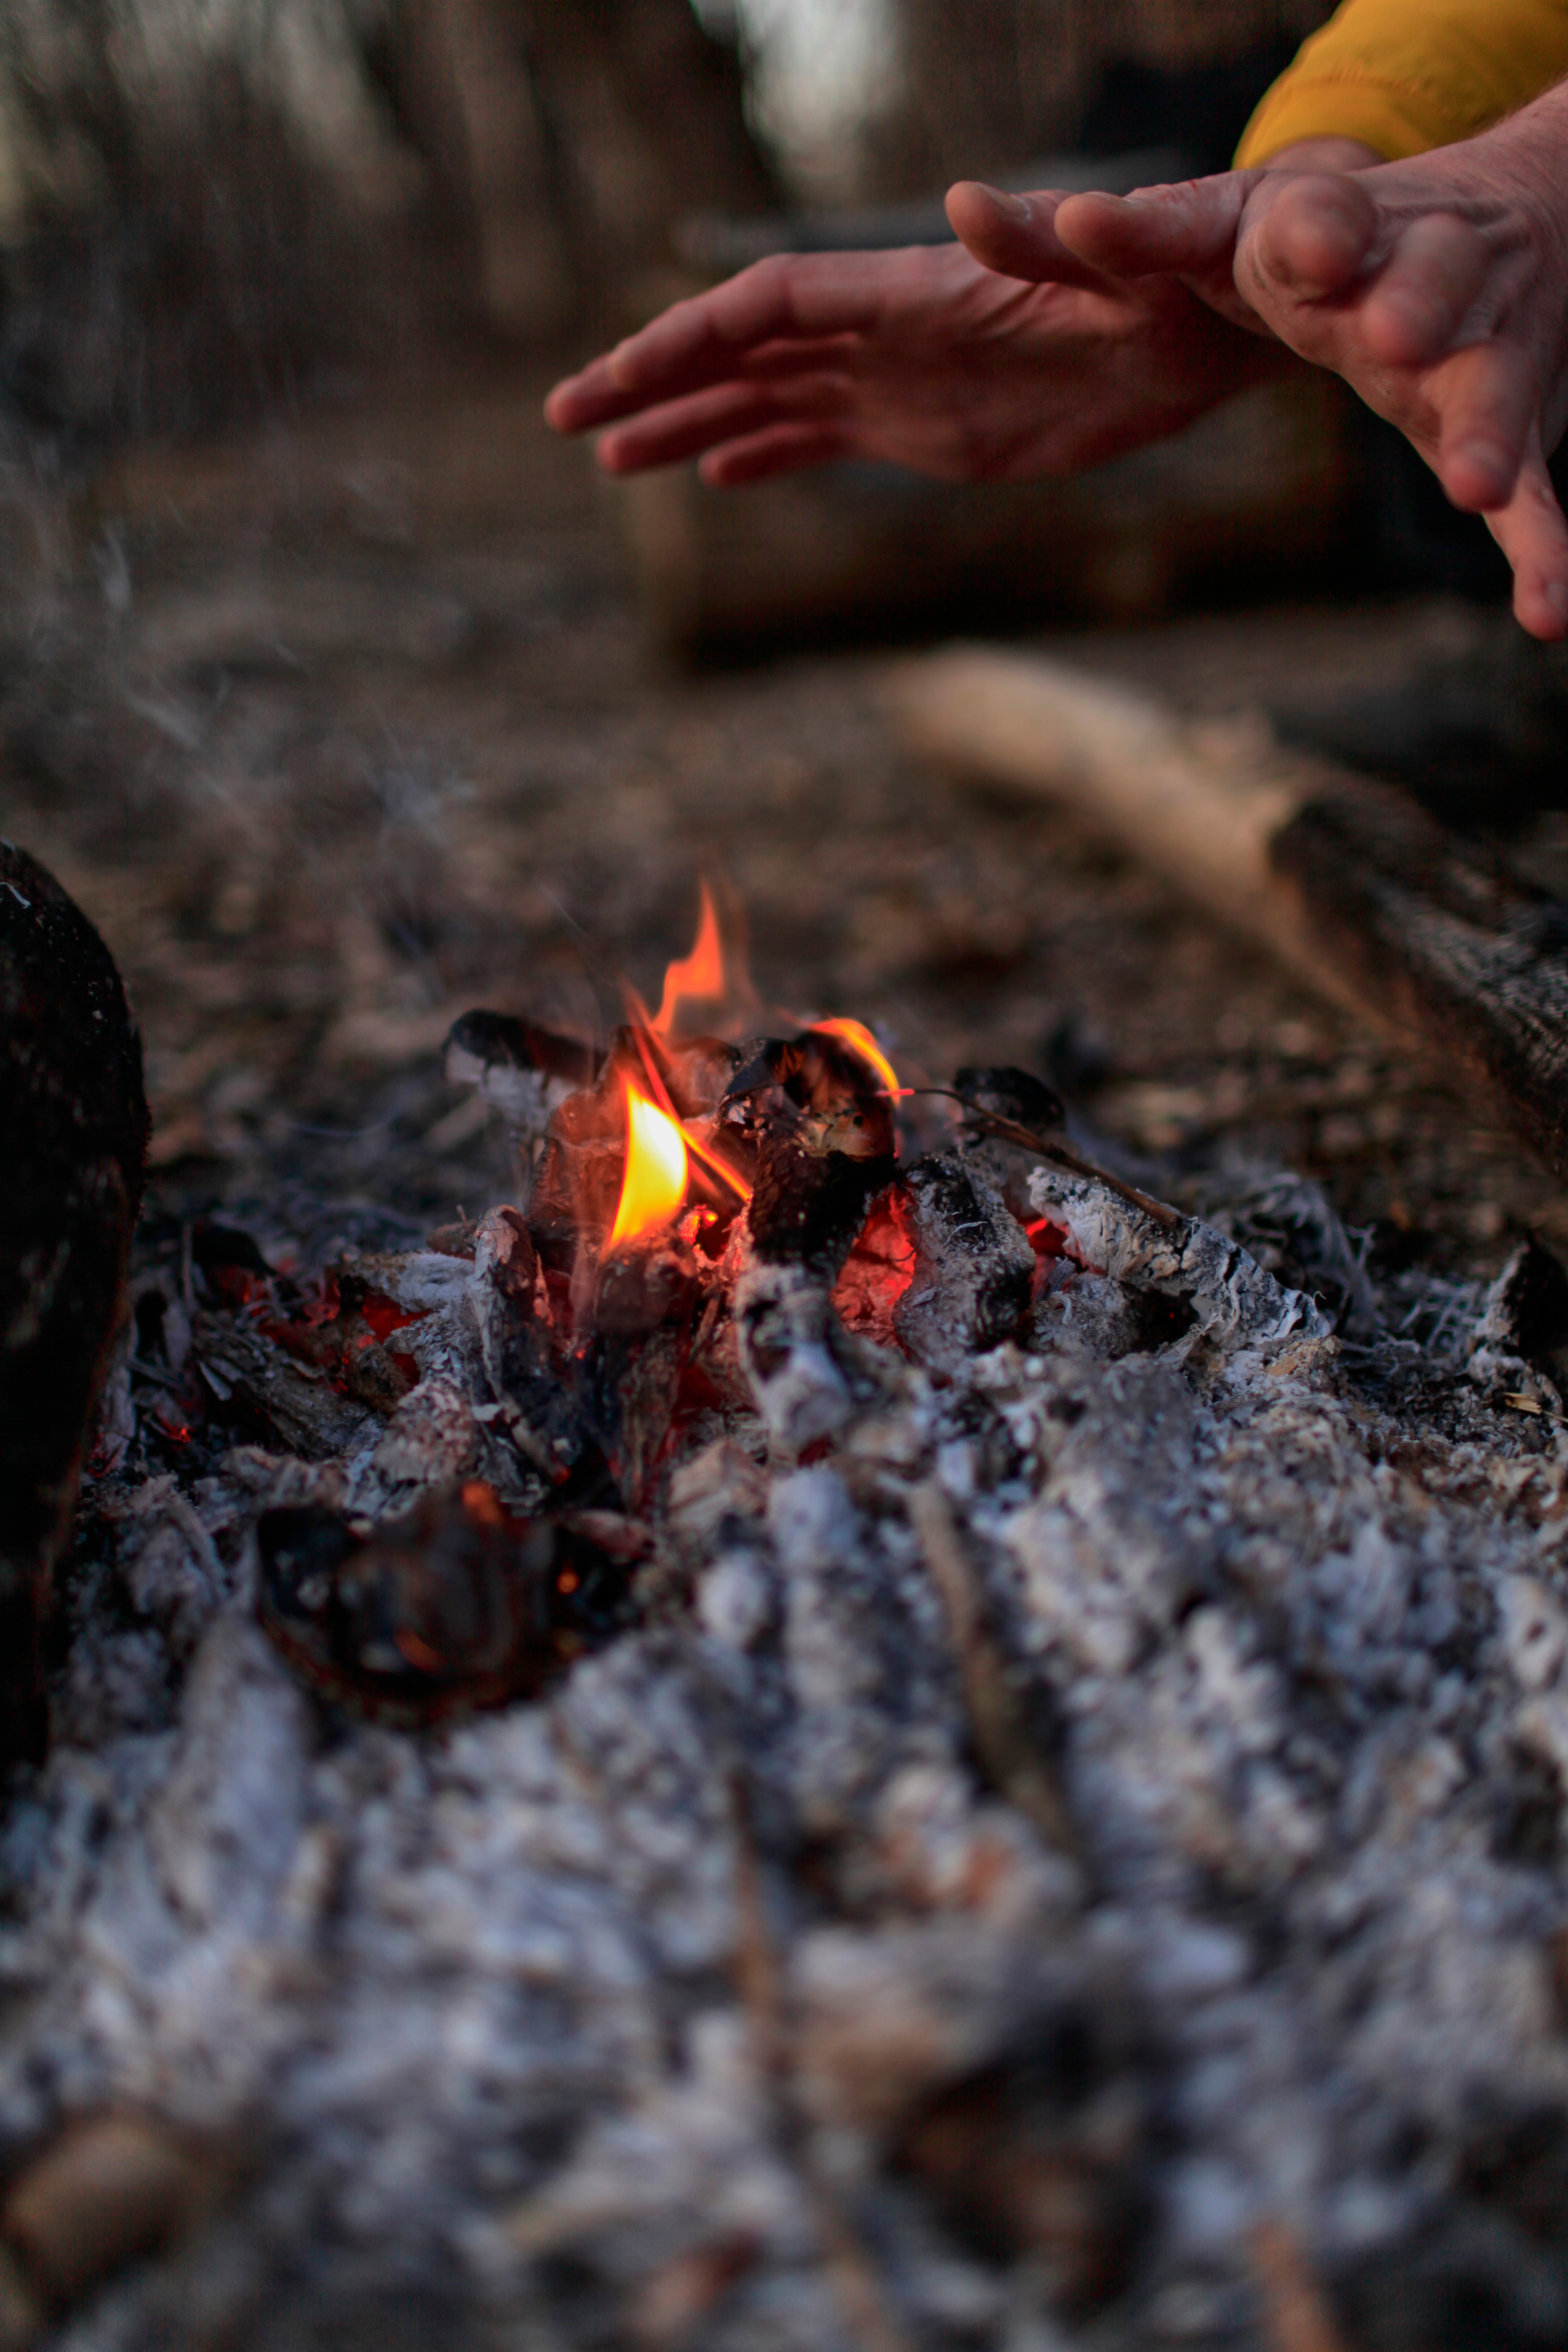 Manos cerca del fuego | Fuente: Shutterstock.com